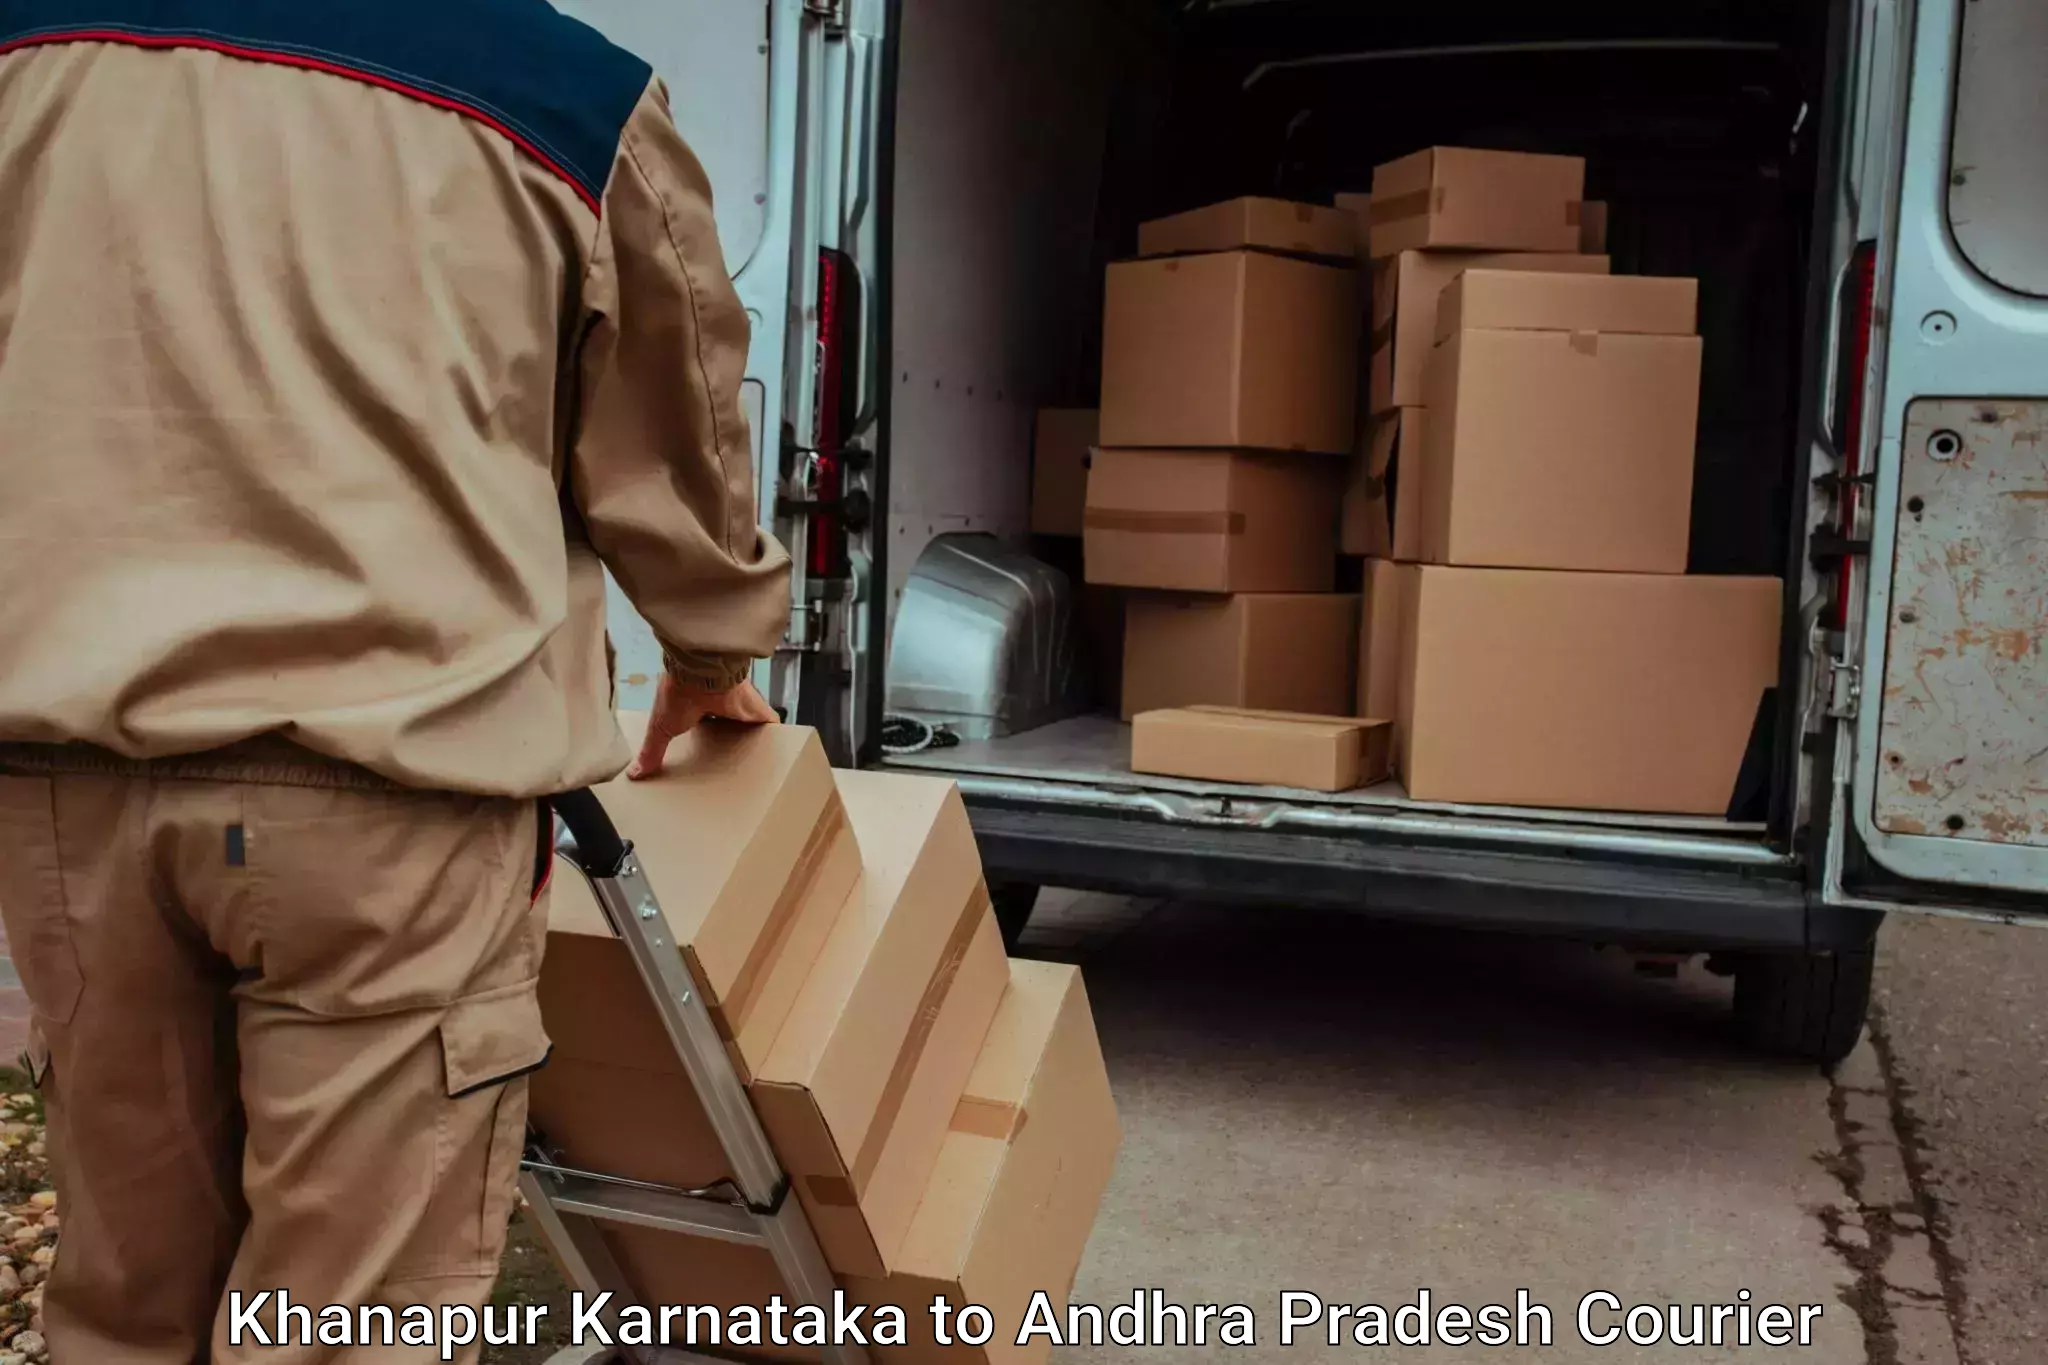 Baggage transport scheduler Khanapur Karnataka to Koneru Lakshmaiah Education Foundation University Vaddeswaram